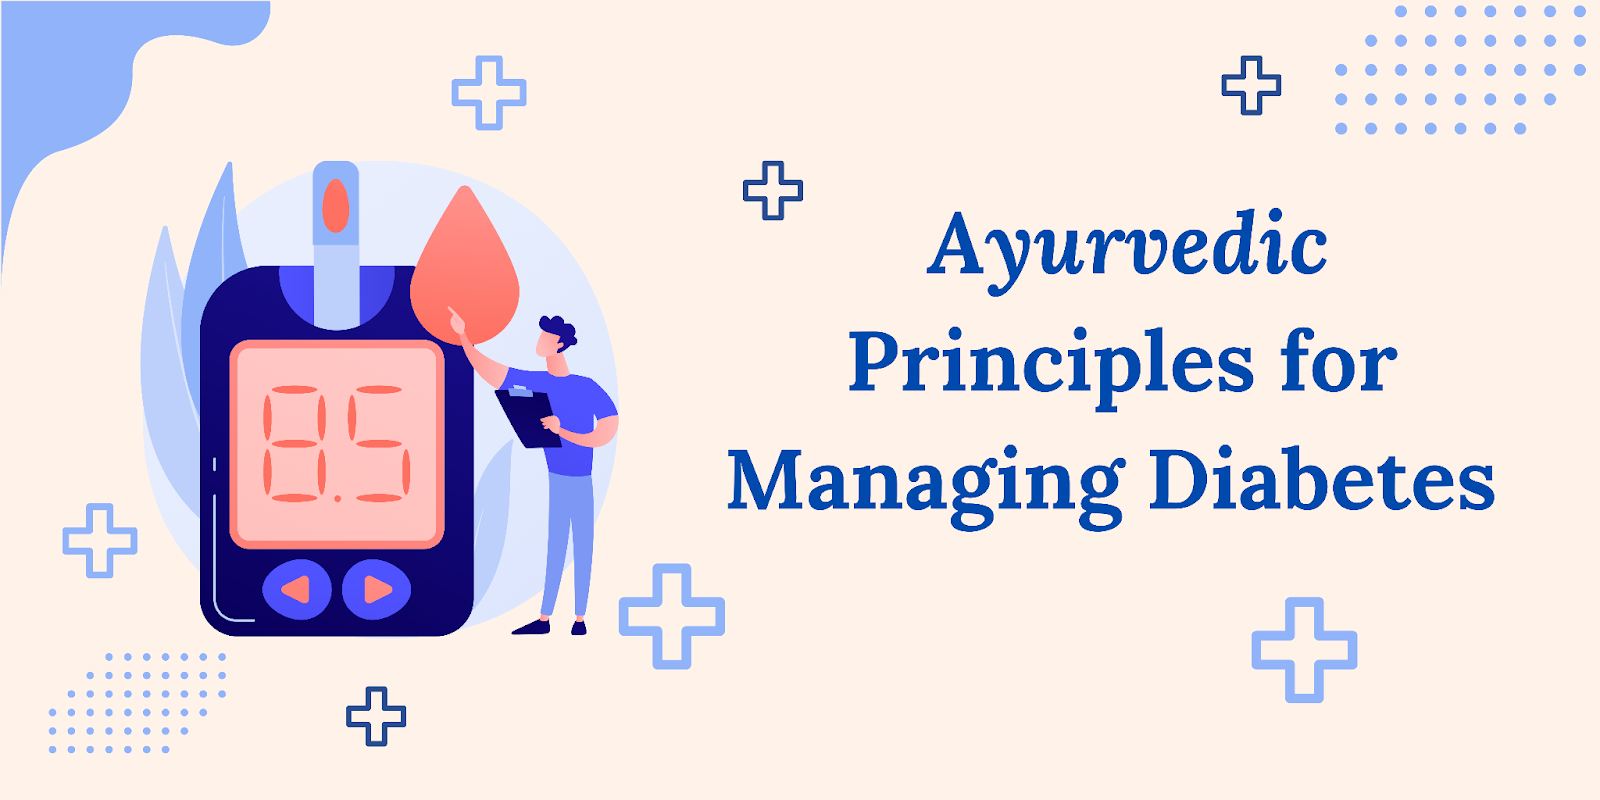 Ayurvedic principles for managing diabetes